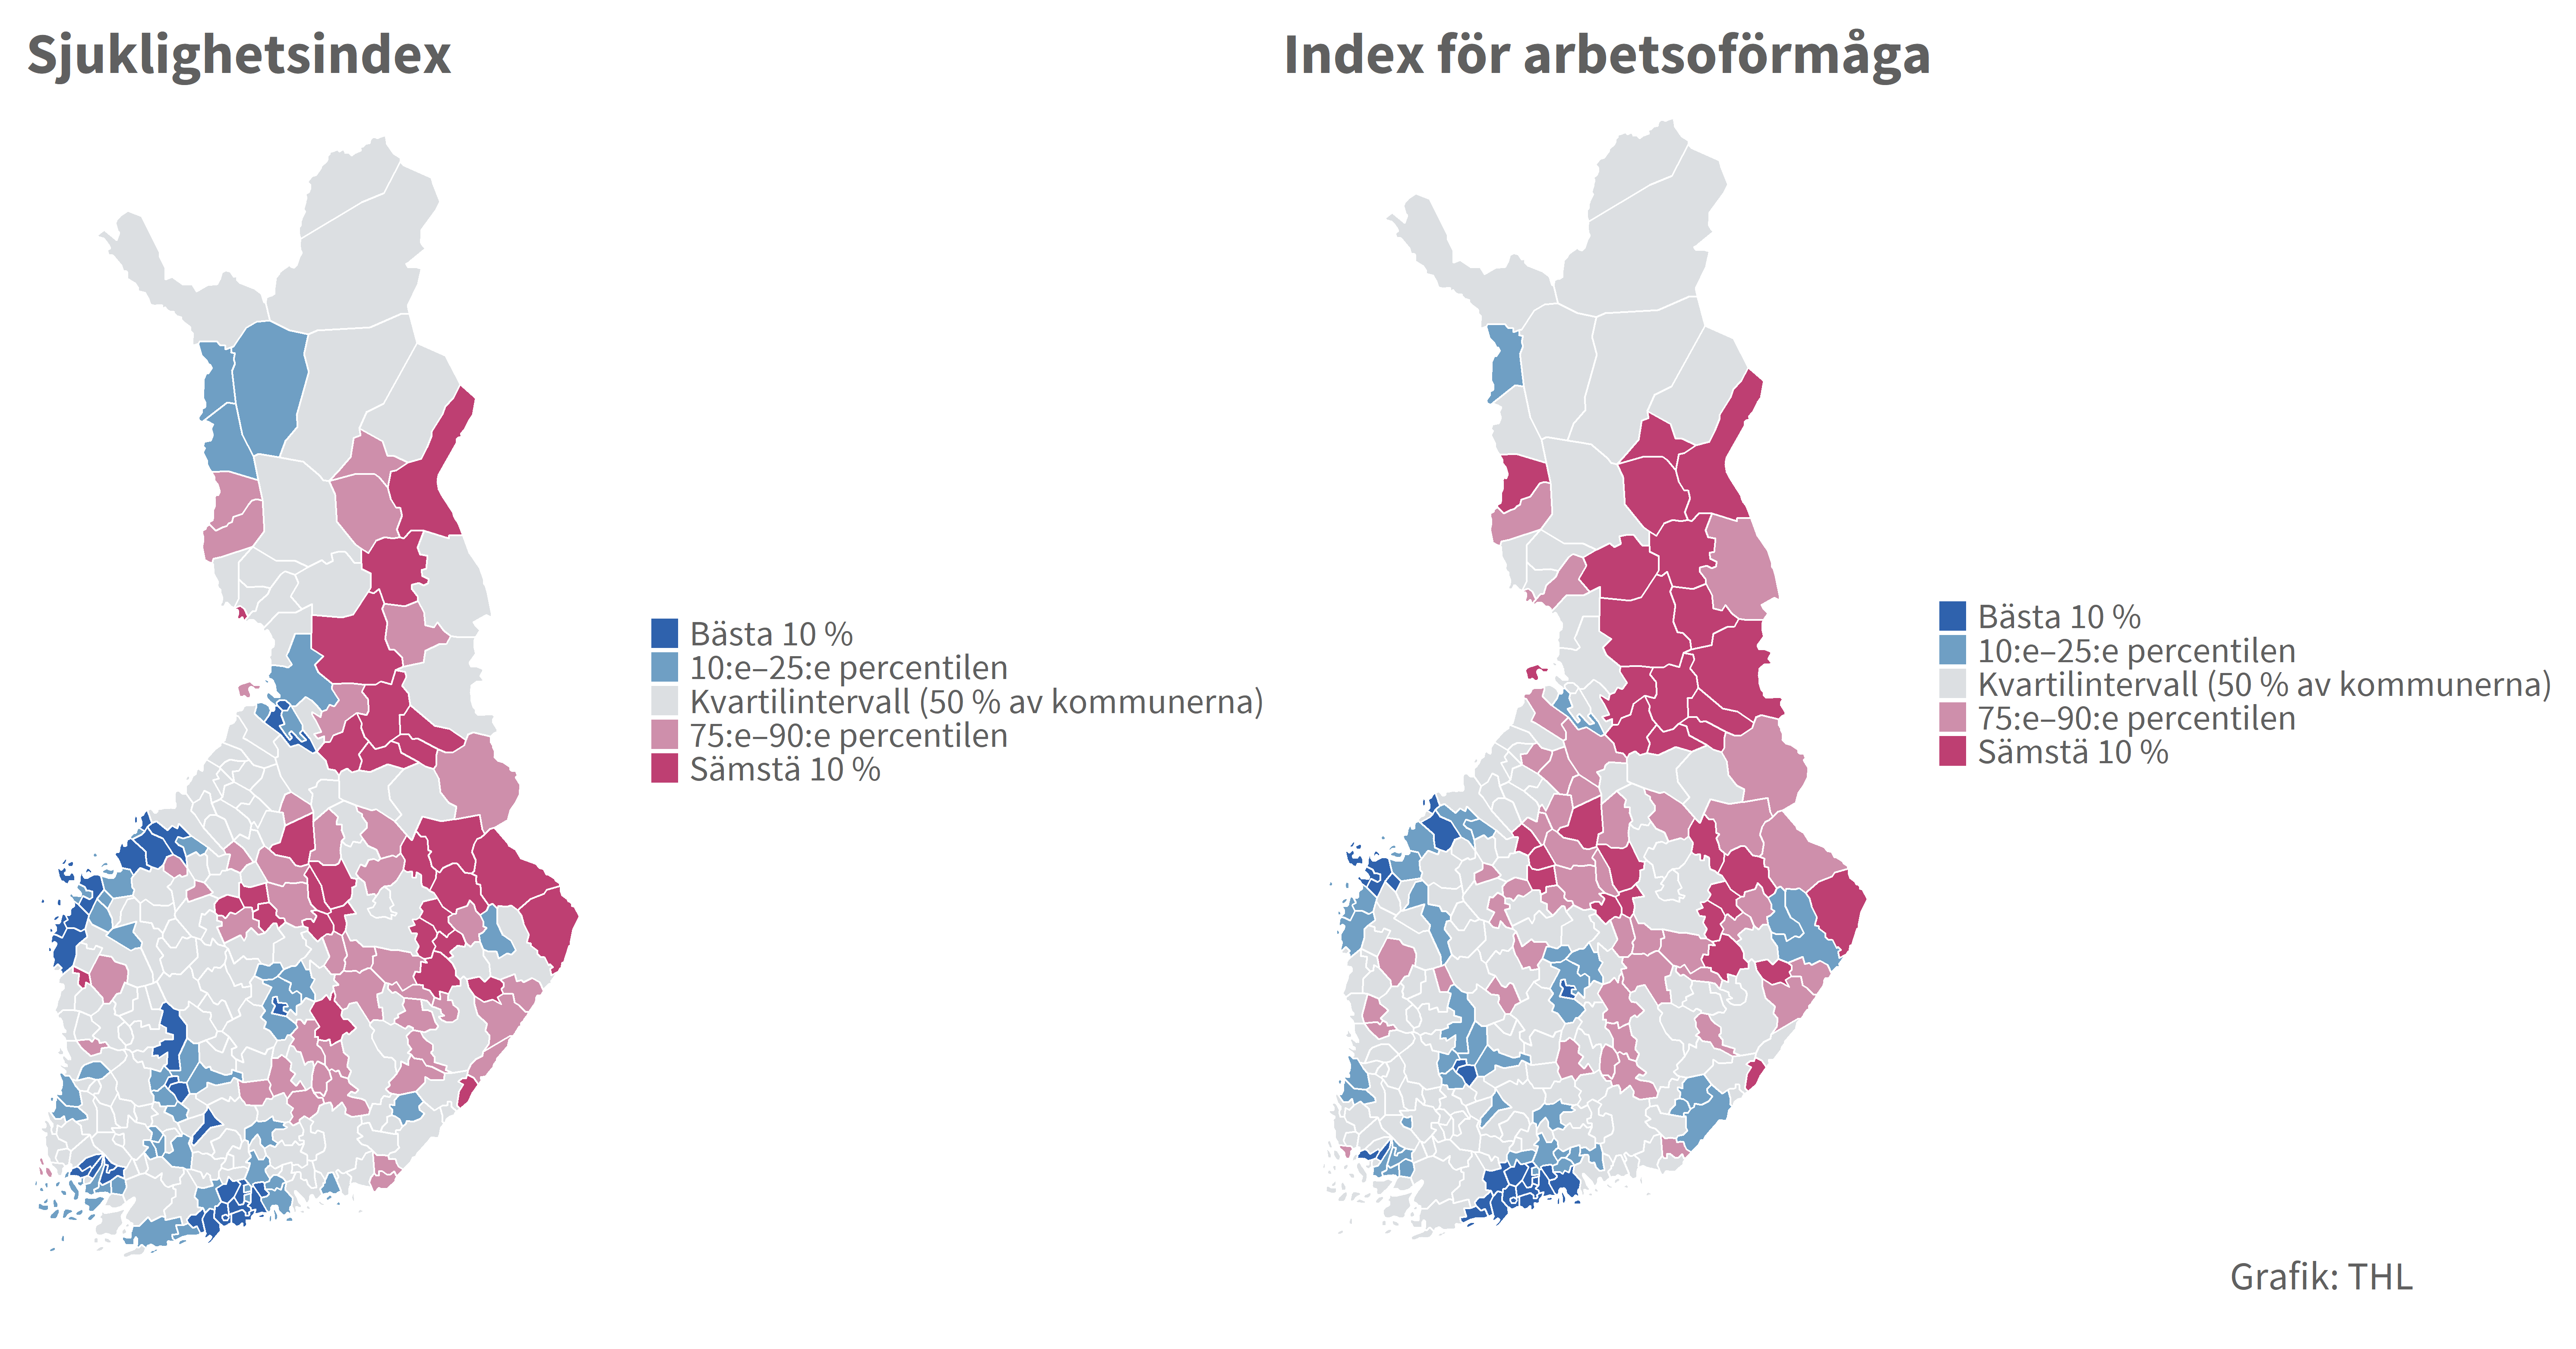 Kartbild av Nationella hälsoindexets index för sjuklighet och arbetsoförmåga. På kartorna ser man att såväl sjukligheten som arbetsoförmågan är värst i östra och norra Finland, medan situationen är bäst i södra Finland och längs kusten.